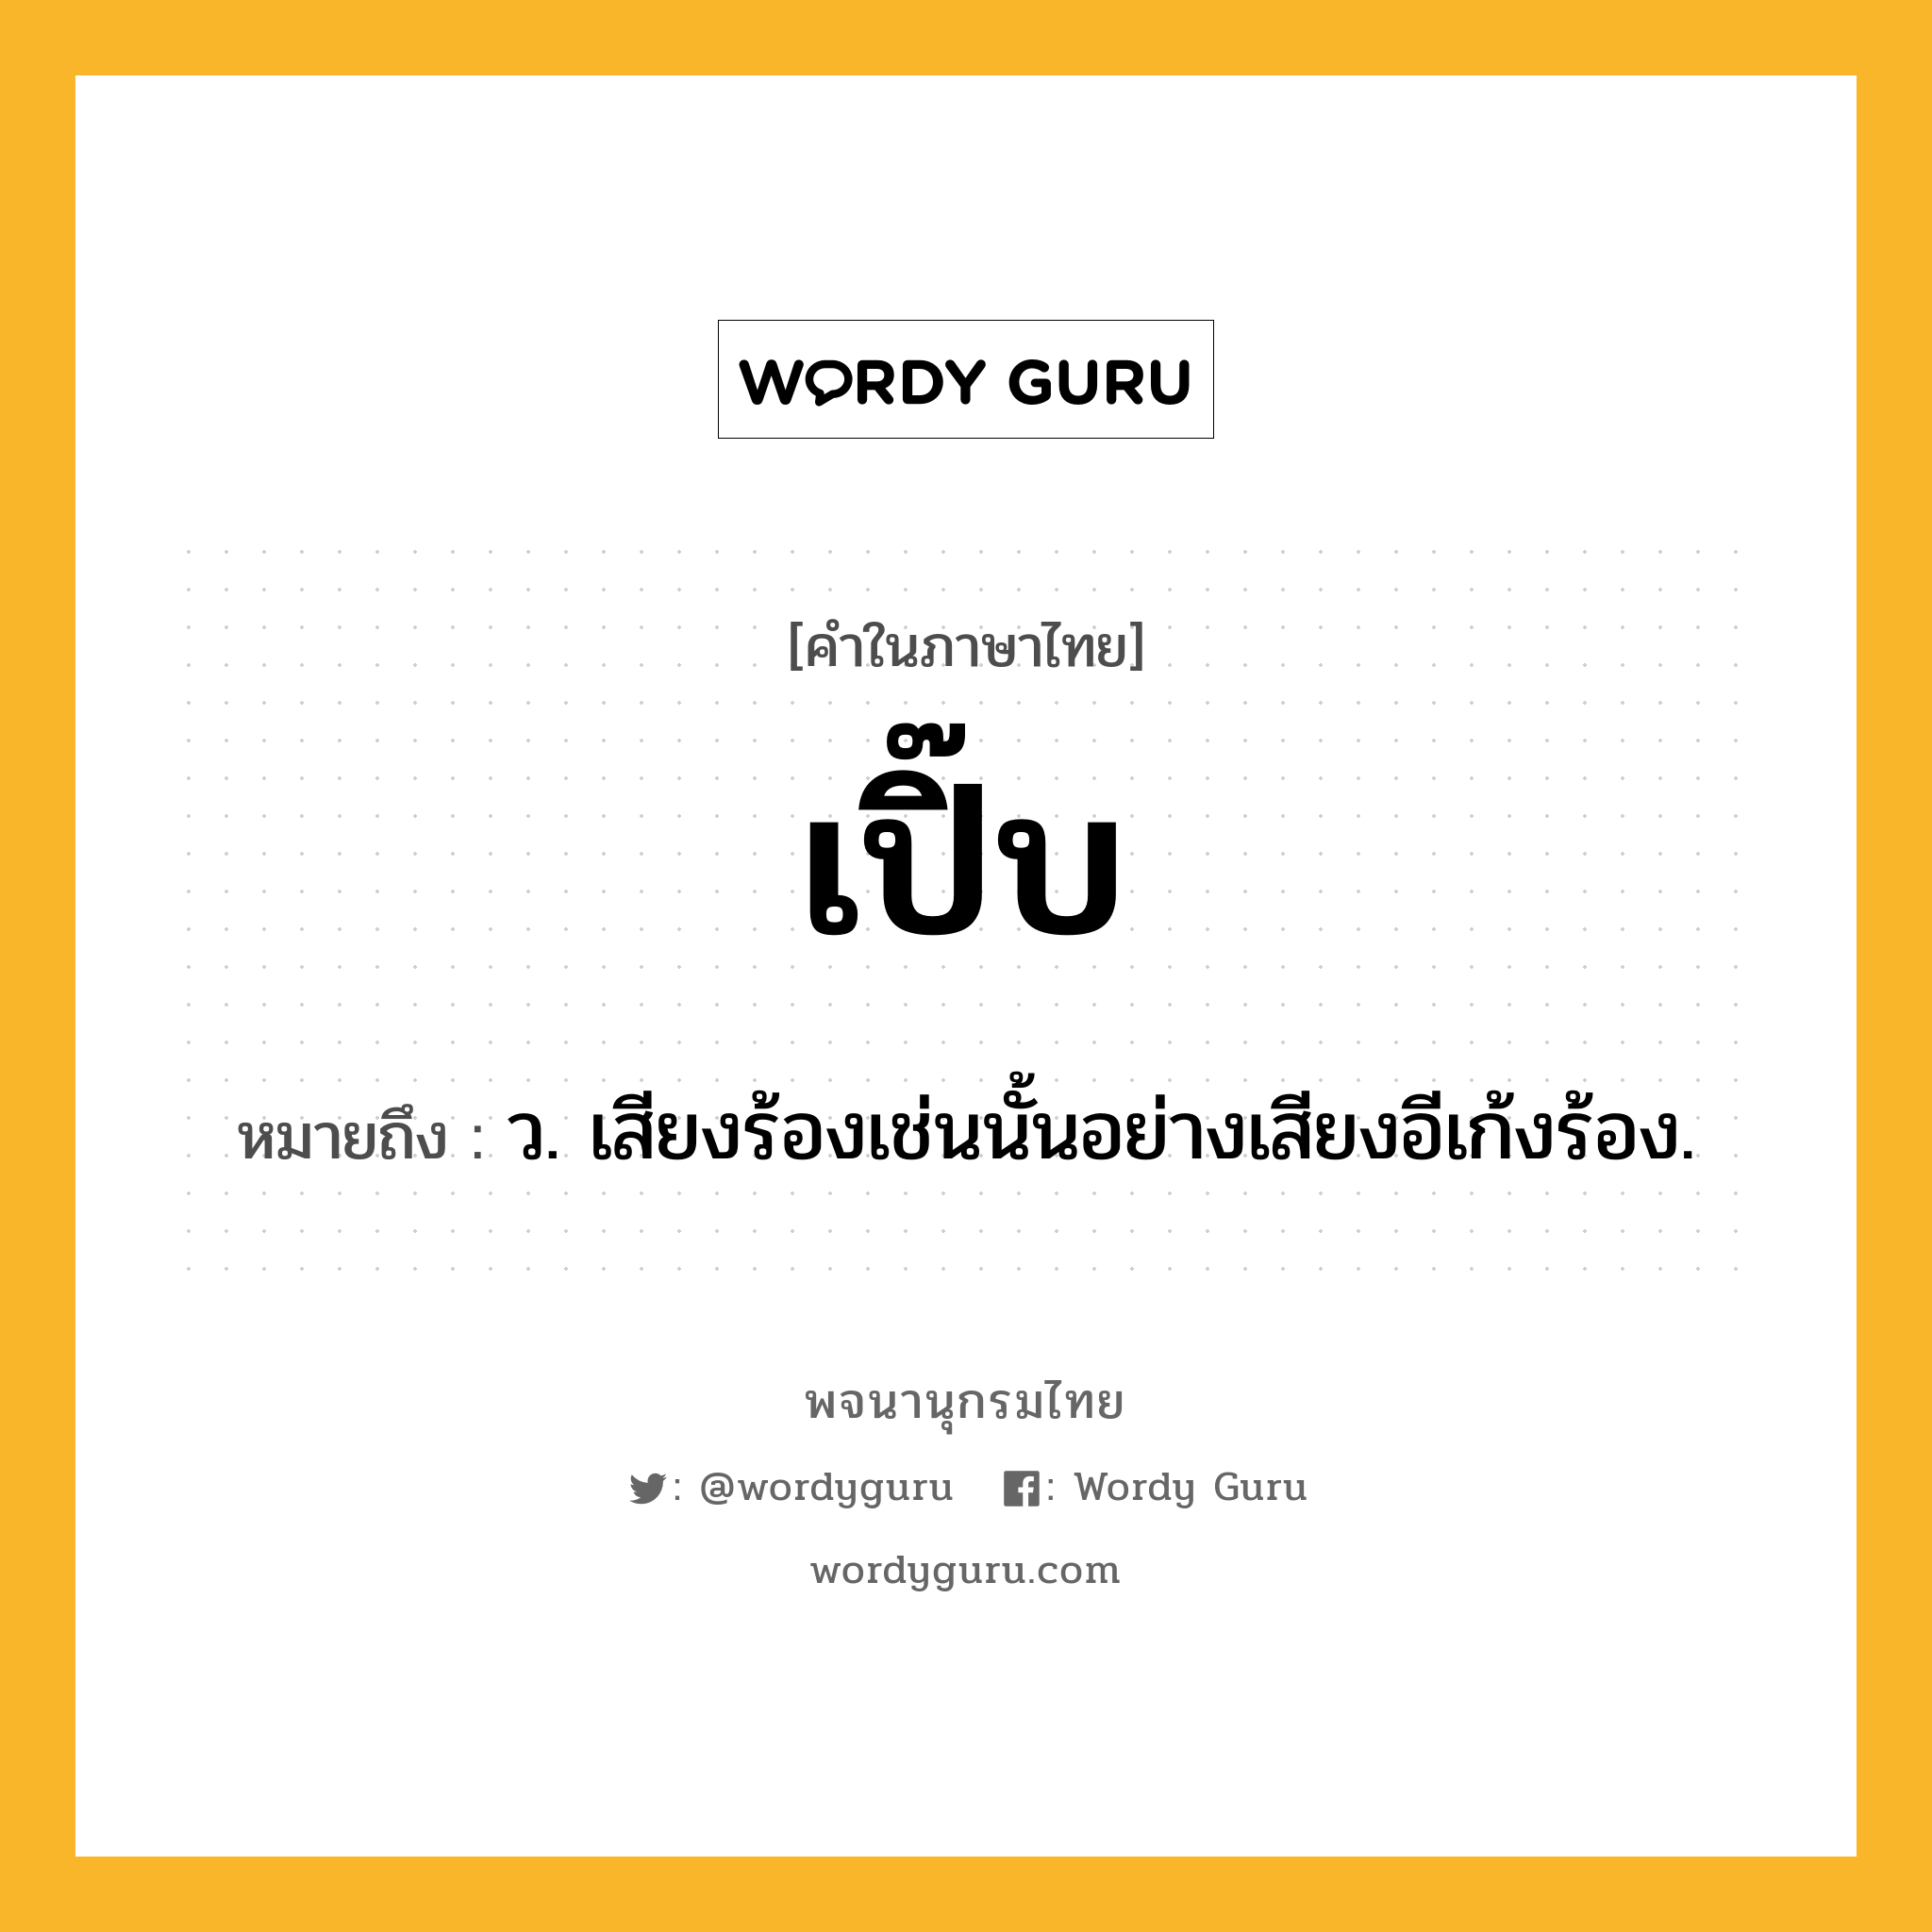 เปิ๊บ ความหมาย หมายถึงอะไร?, คำในภาษาไทย เปิ๊บ หมายถึง ว. เสียงร้องเช่นนั้นอย่างเสียงอีเก้งร้อง.